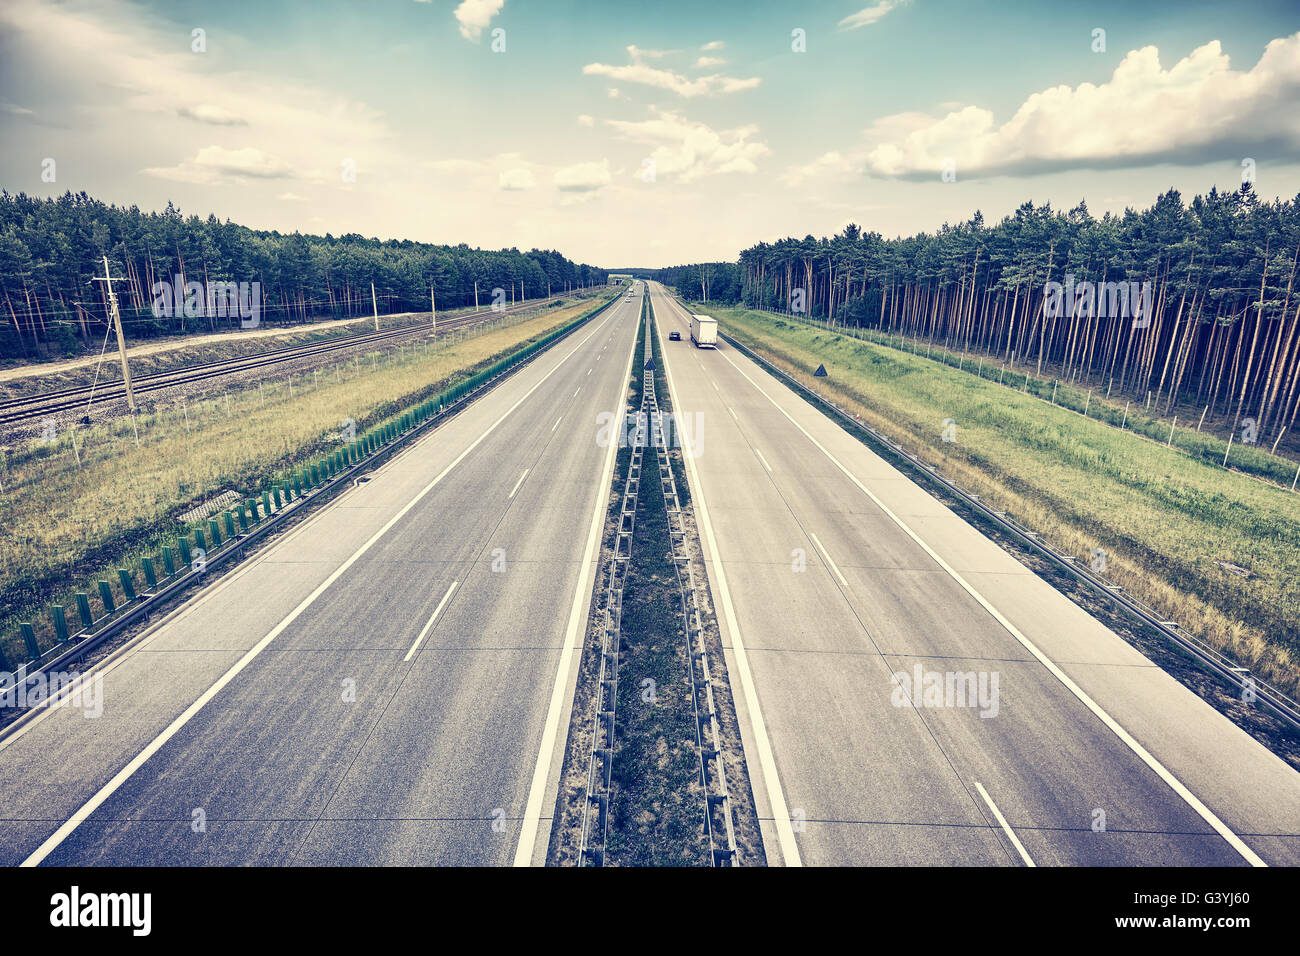 Retrò immagine stilizzata di un autostrada, concetto di viaggio. Foto Stock